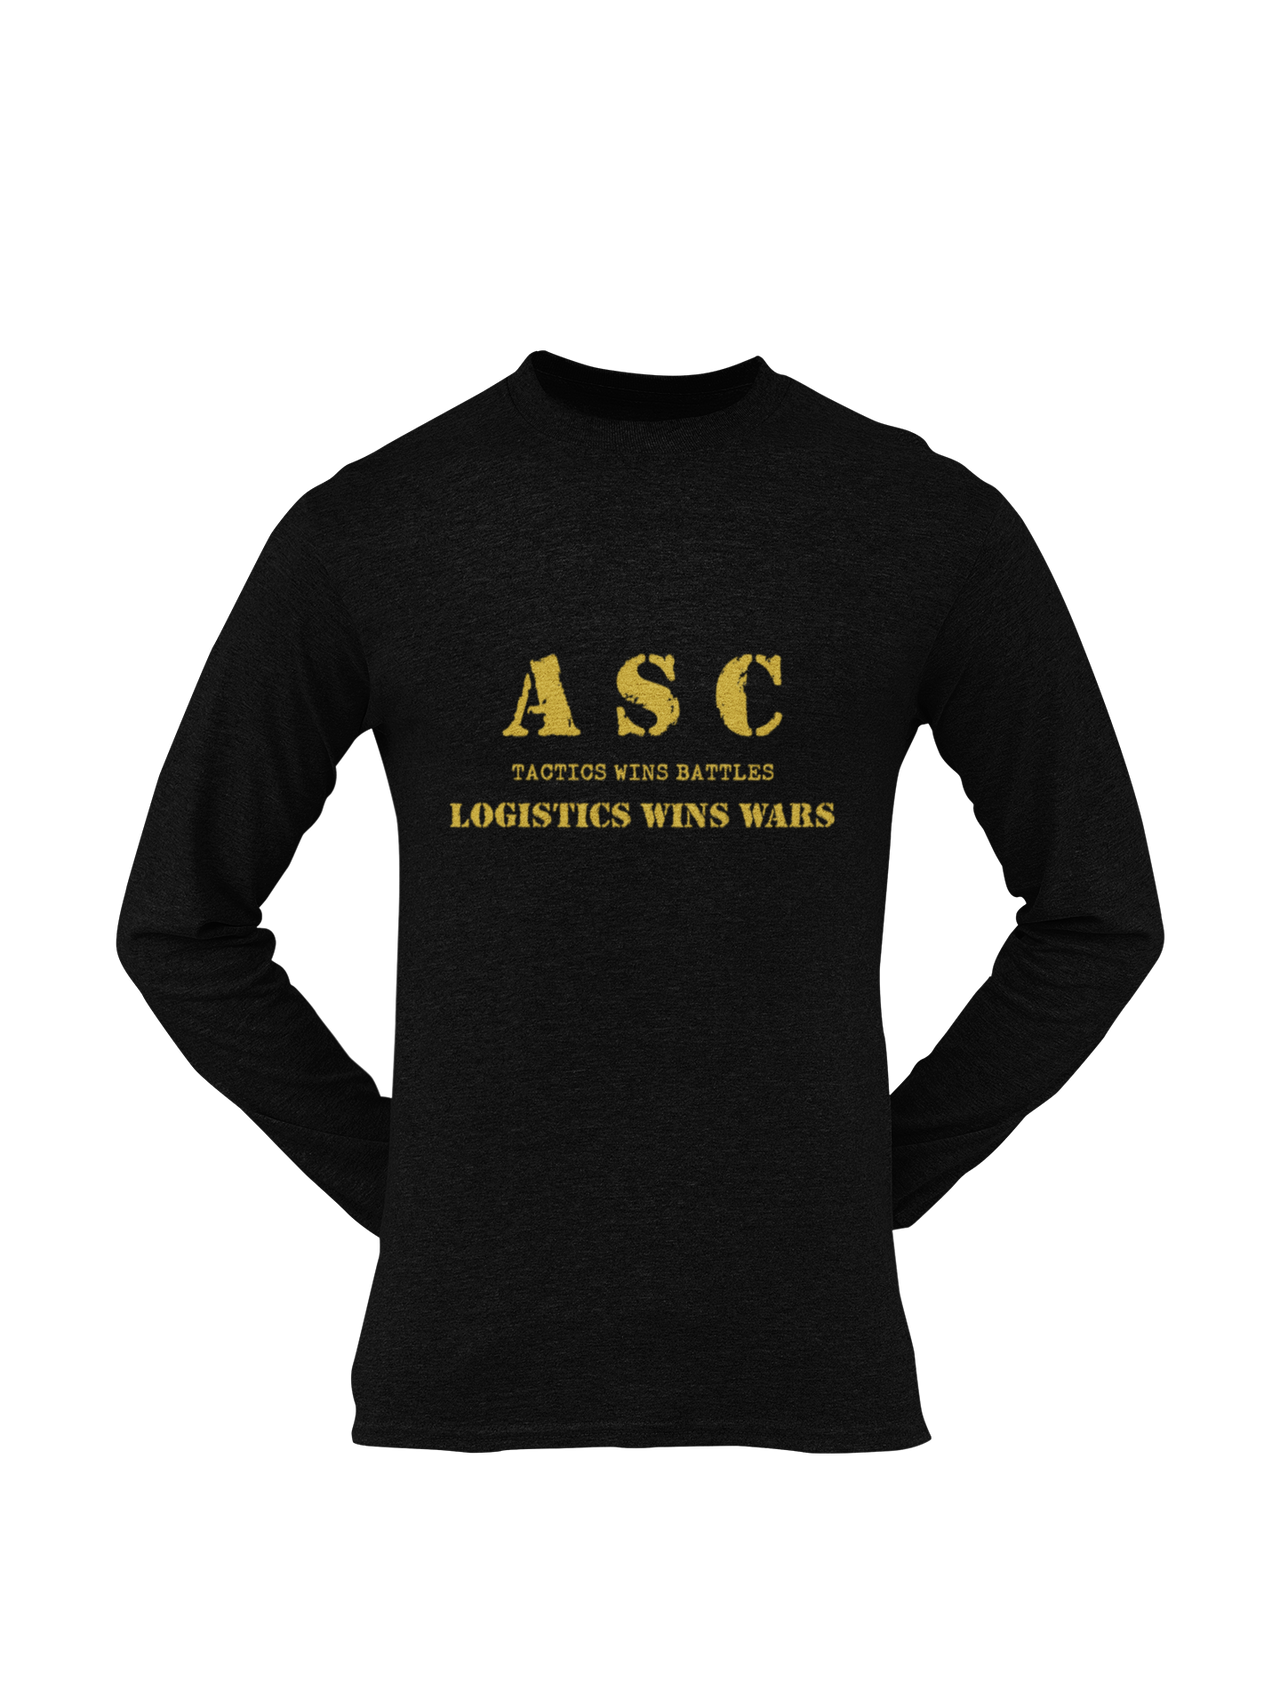 ASC T-shirt - ASC, Tactics Wins Battles, Logistics Wins Wars (Men)